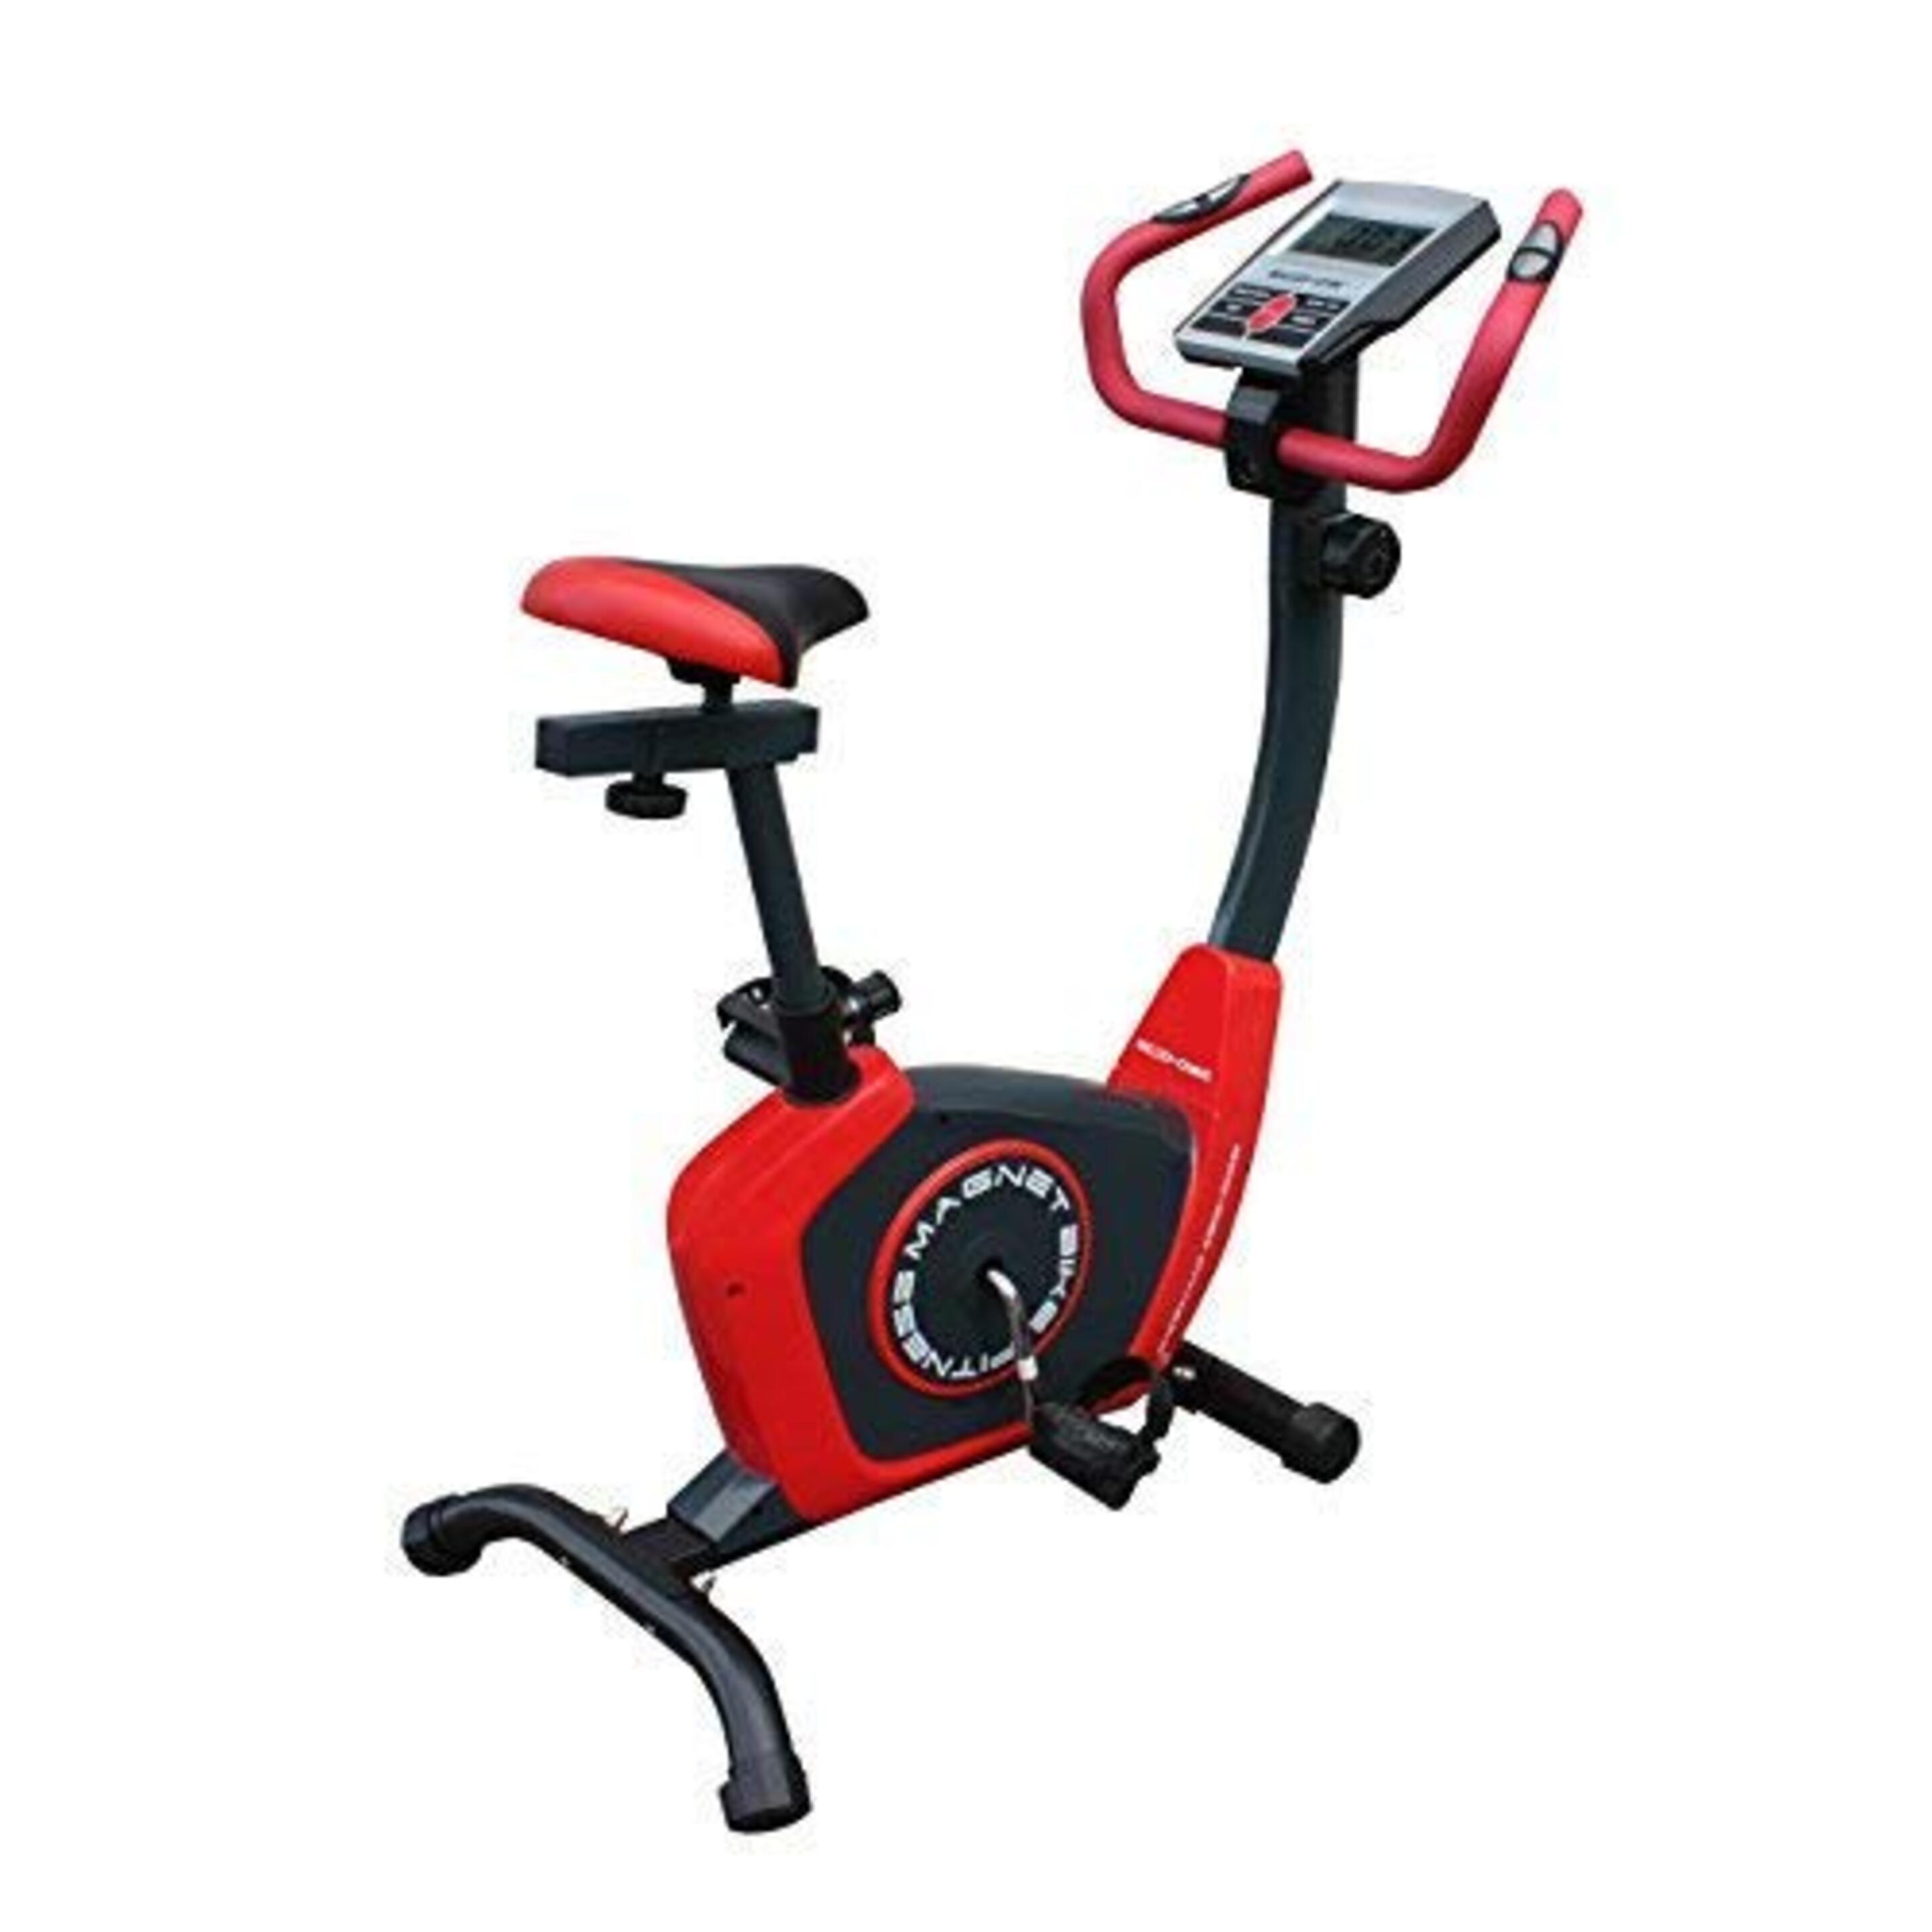 Bicicleta Magnética Eco-de®
“magnet Bike”